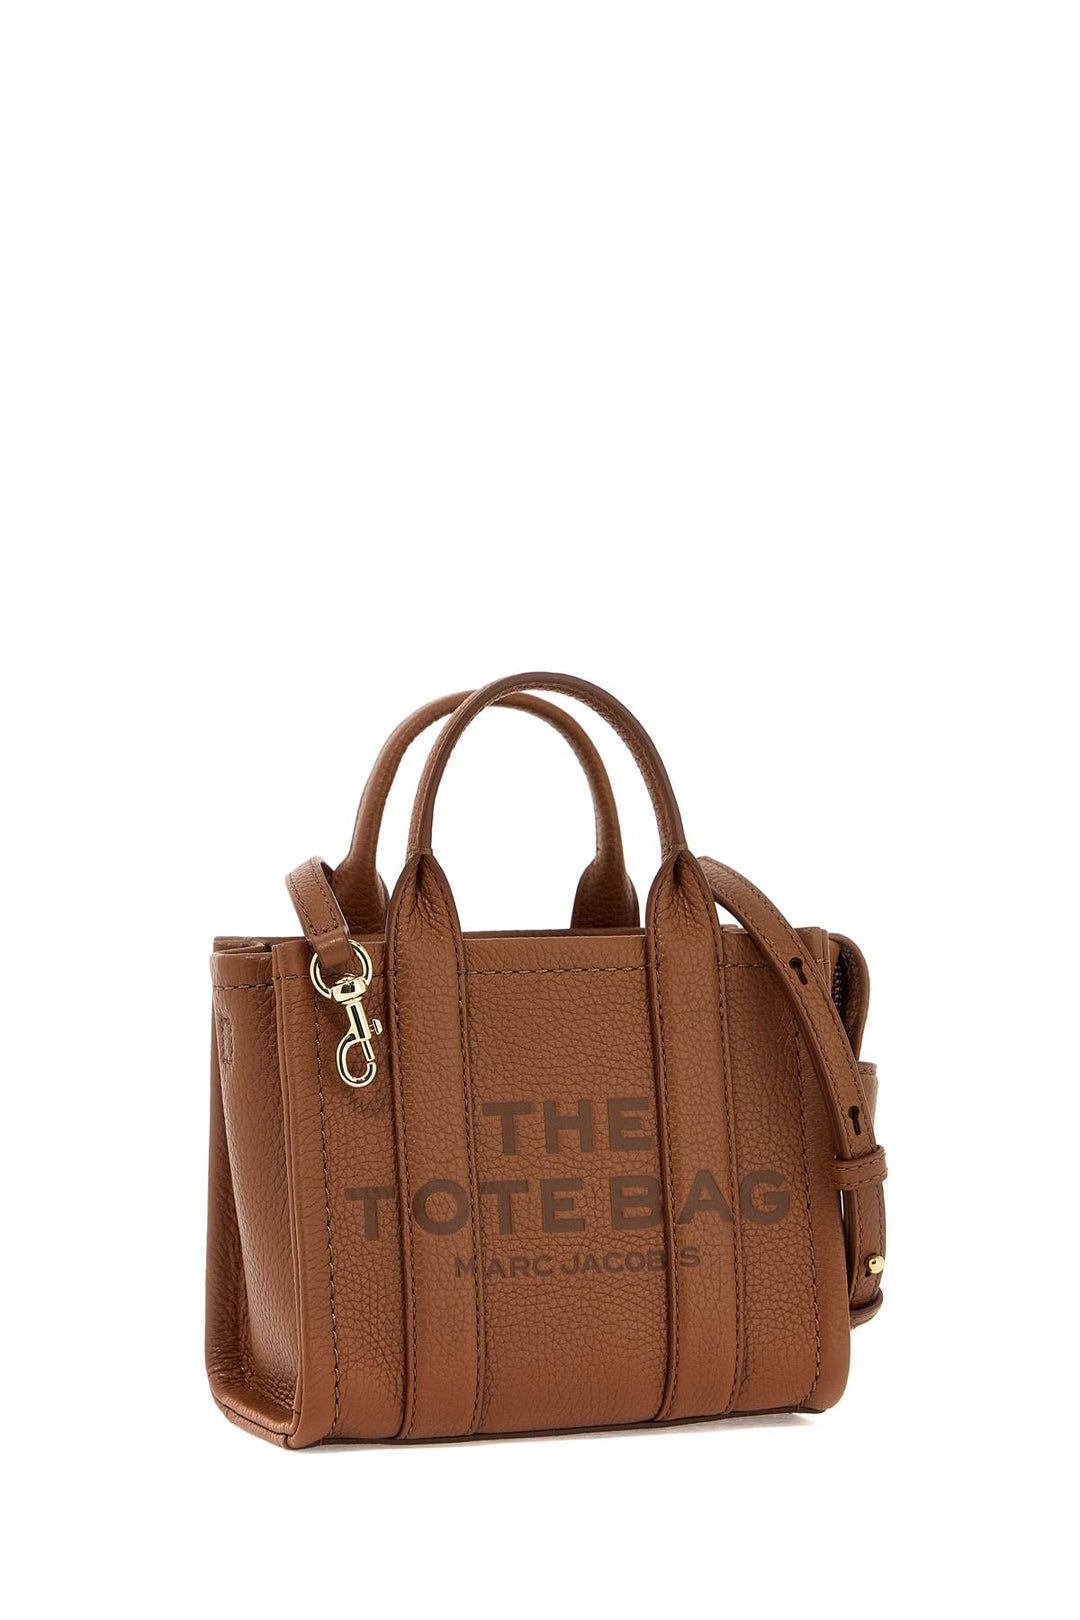 the leather mini tote bag-2